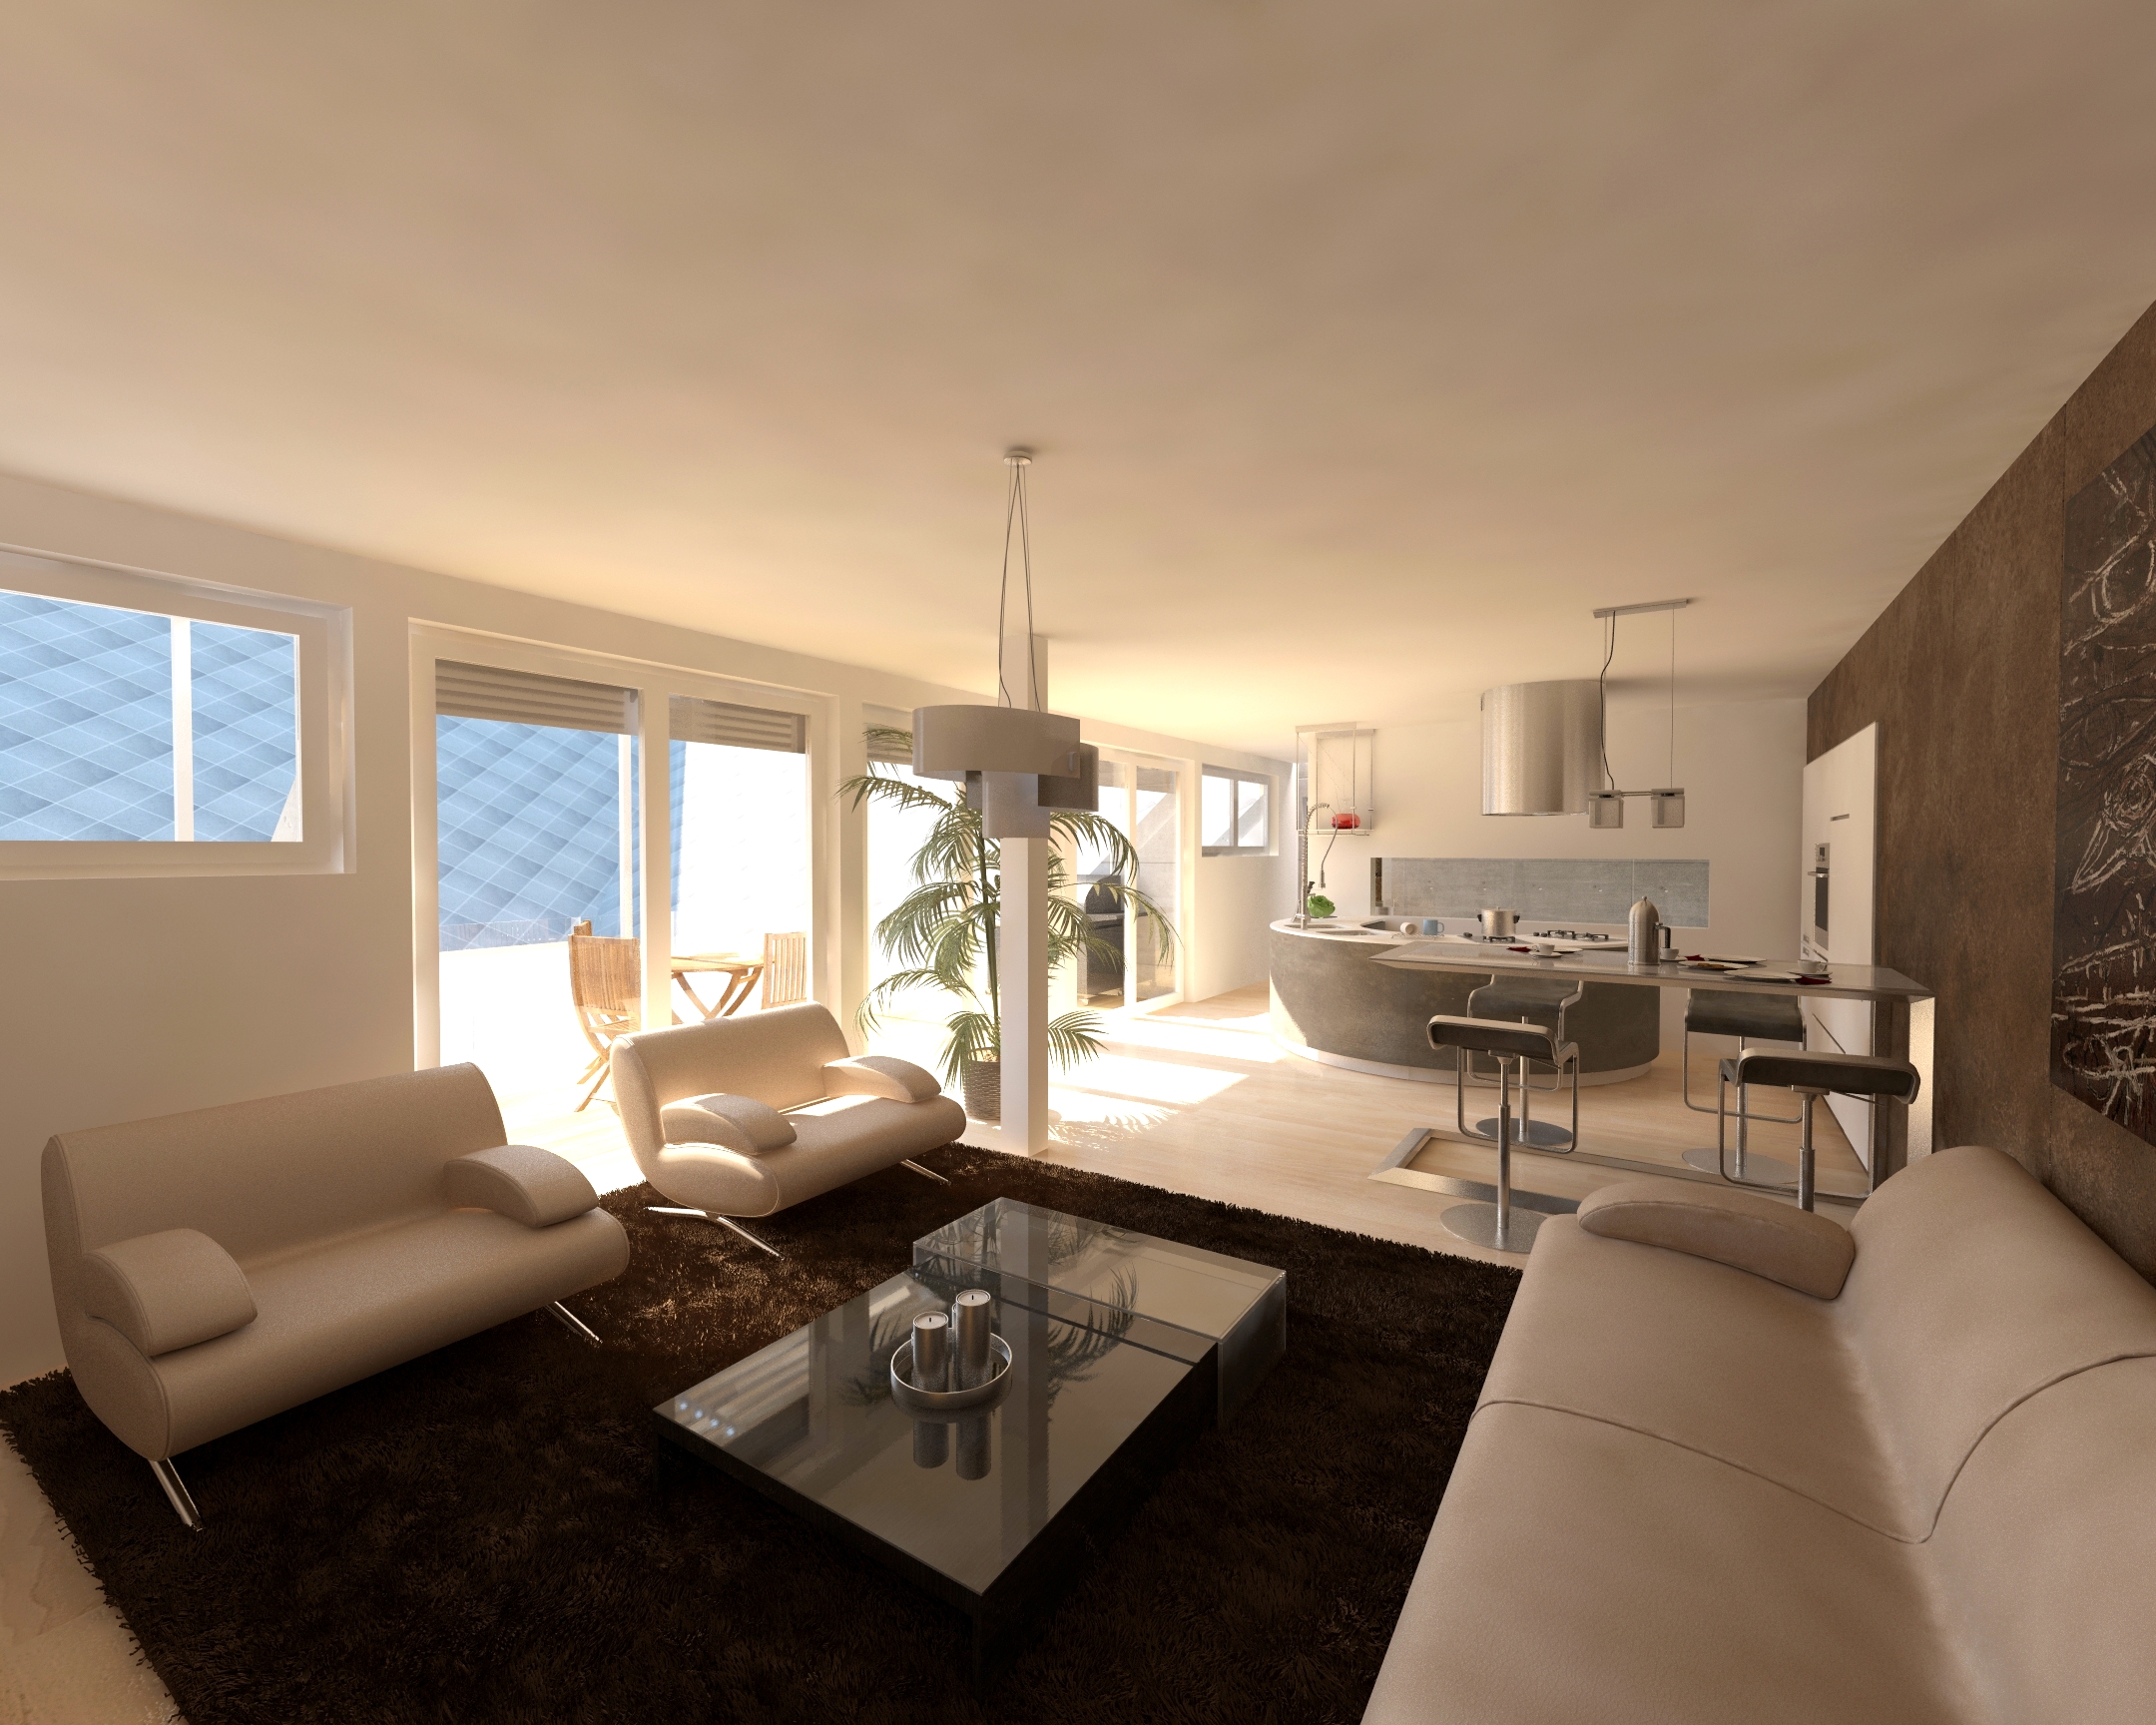 Nappali - látványterv / Living room - architectural visualization